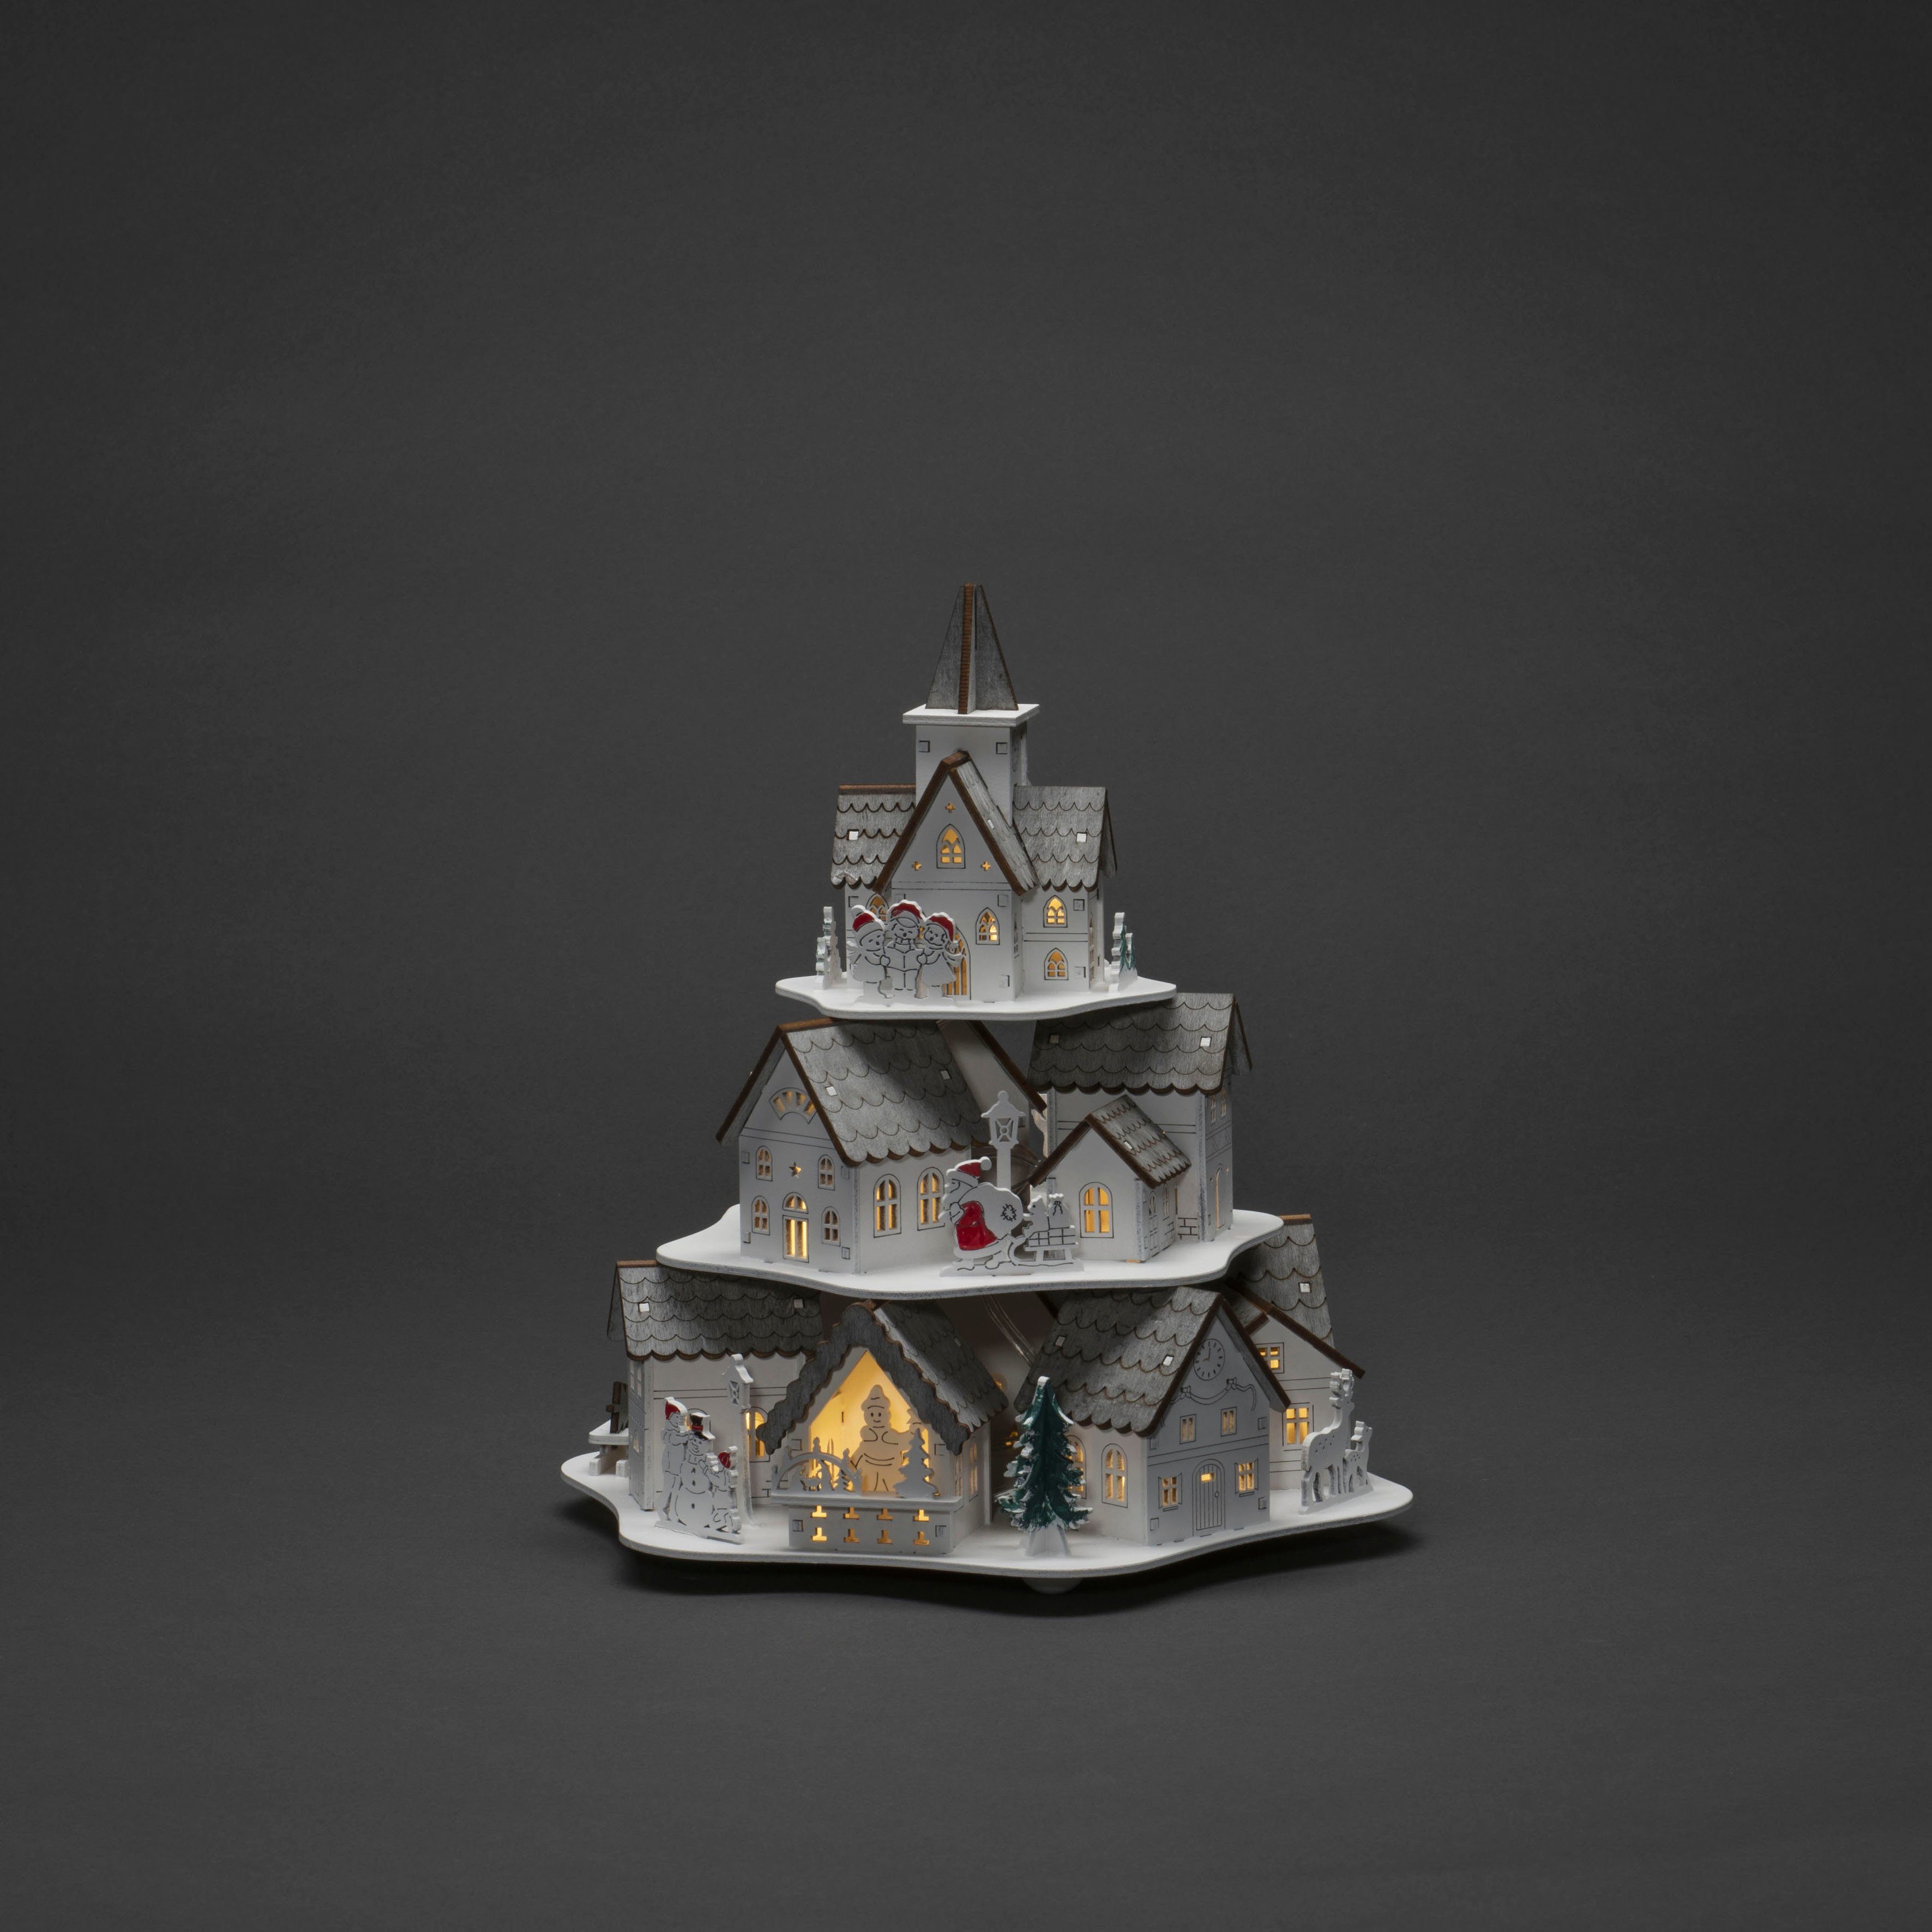 KONSTSMIDE Weihnachtshaus LED Holzsilhouette Häuser, weiß, 10 warm weiße  Dioden, wählbare Energieversorgung zwischen USB oder Batteriebetrieb, 6h  Timer